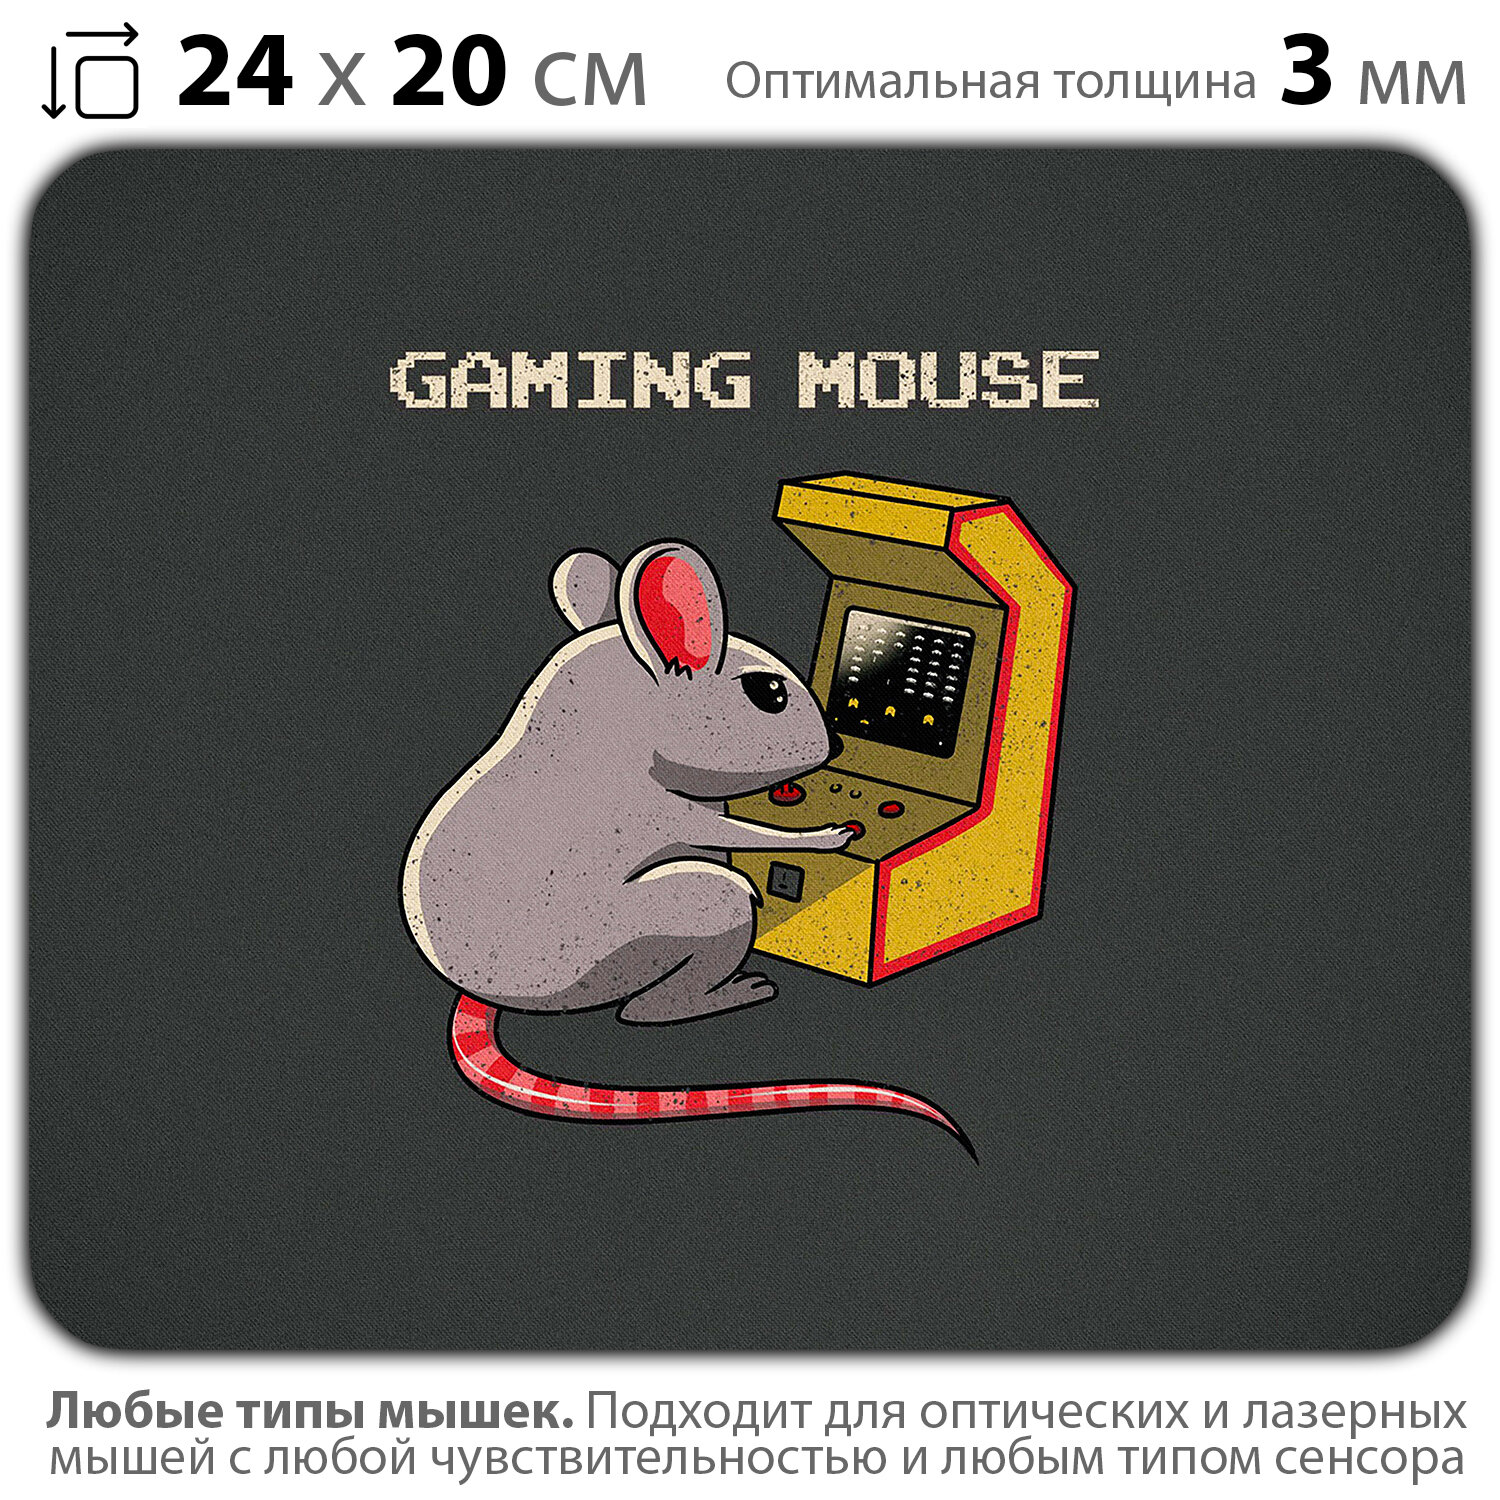 Коврик для мыши "Игровая мышь" (24 x 20 см x 3 мм)